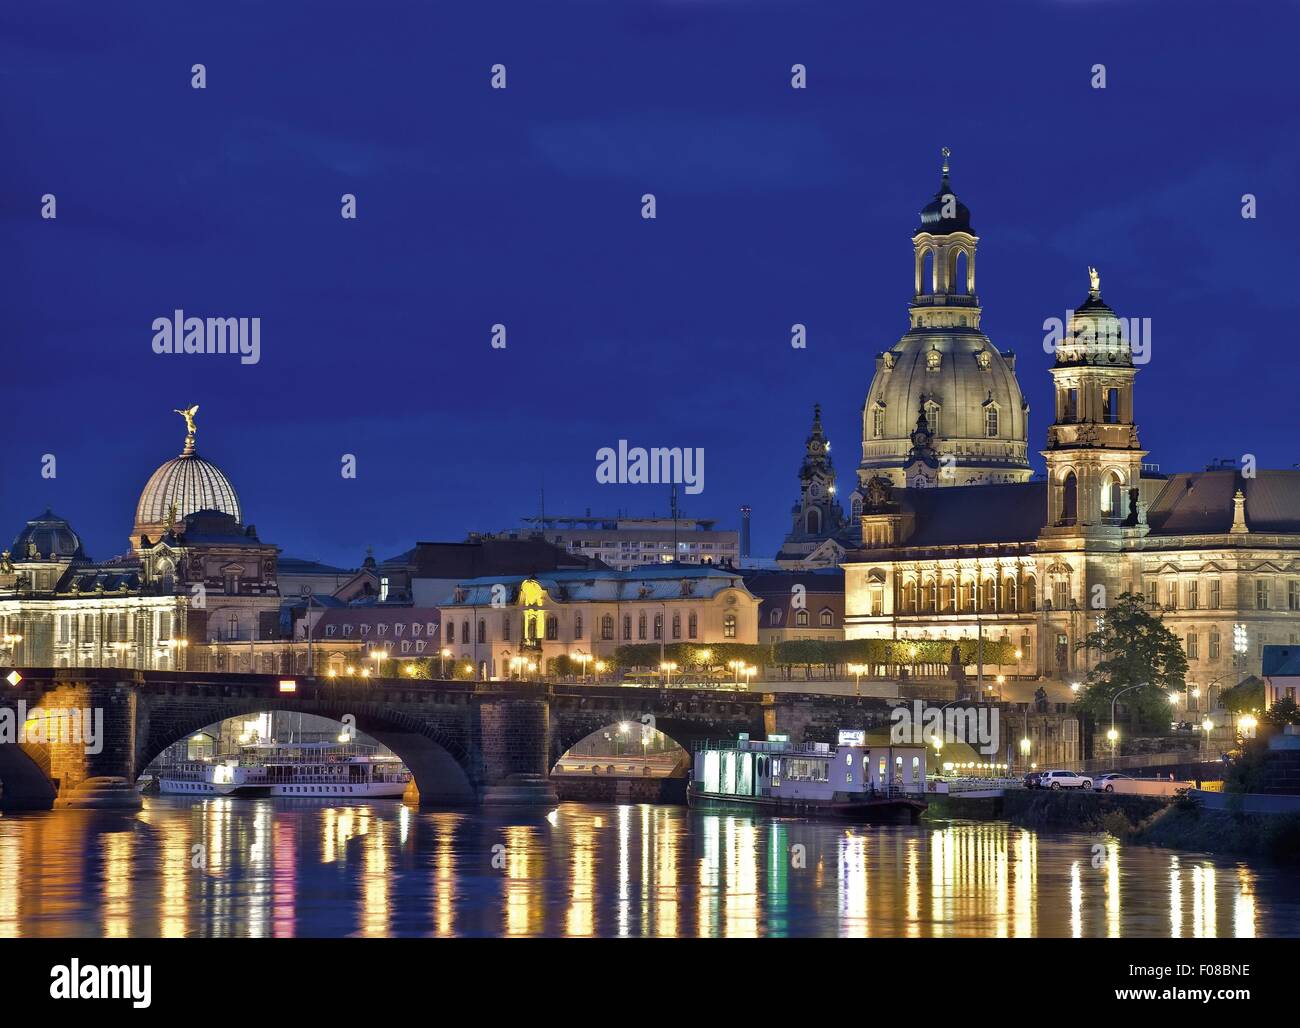 Vue de nuit de la ville de Dresde, Saxe, Allemagne Banque D'Images